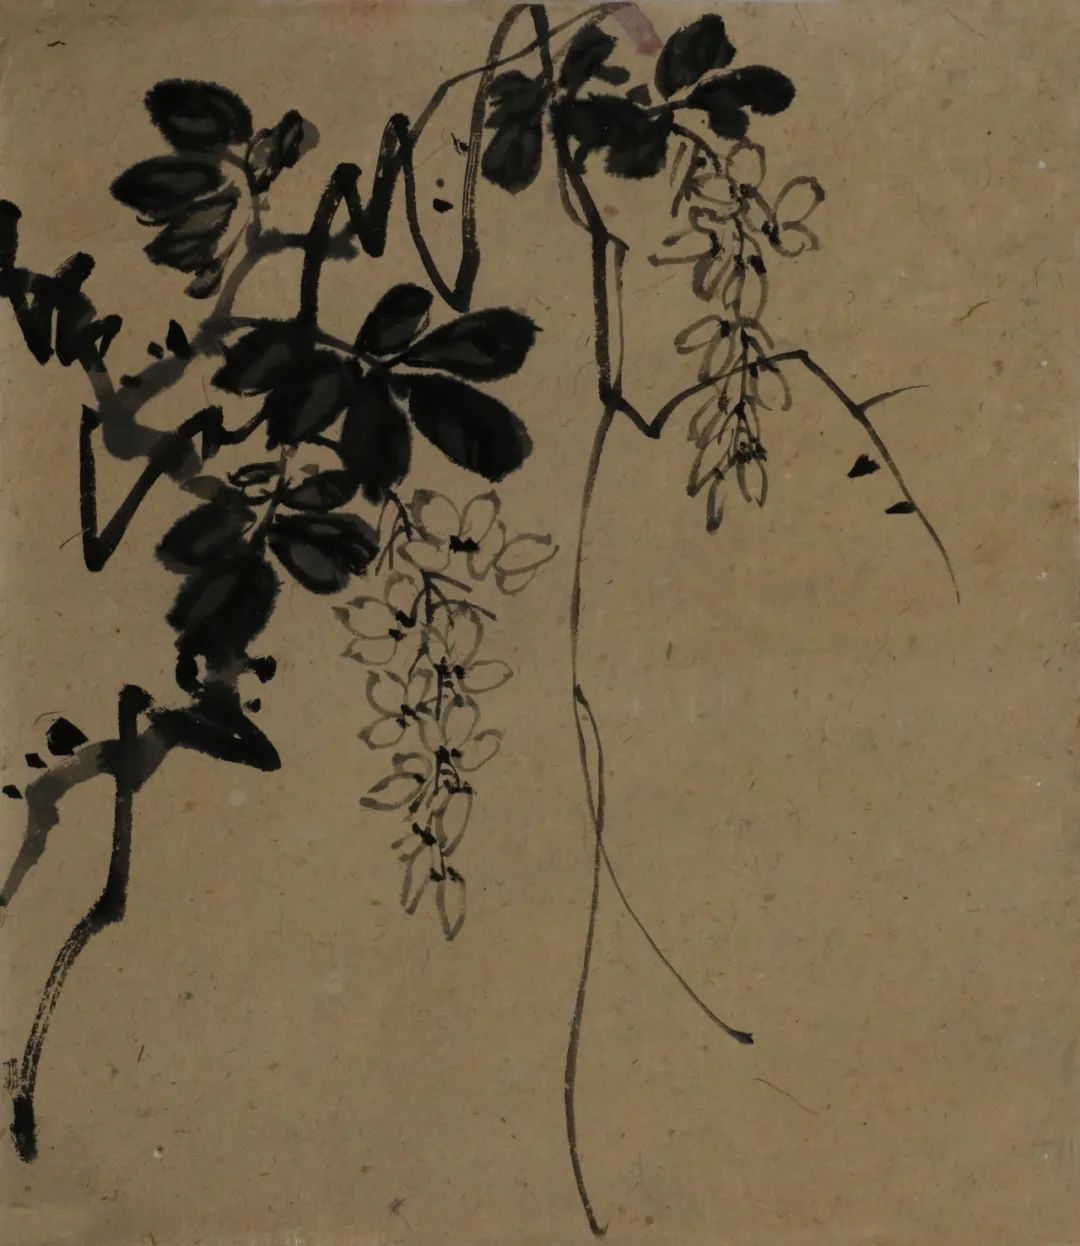    张肇铭  紫藤花 1940年代 中国画  纸本42cmx36cm  